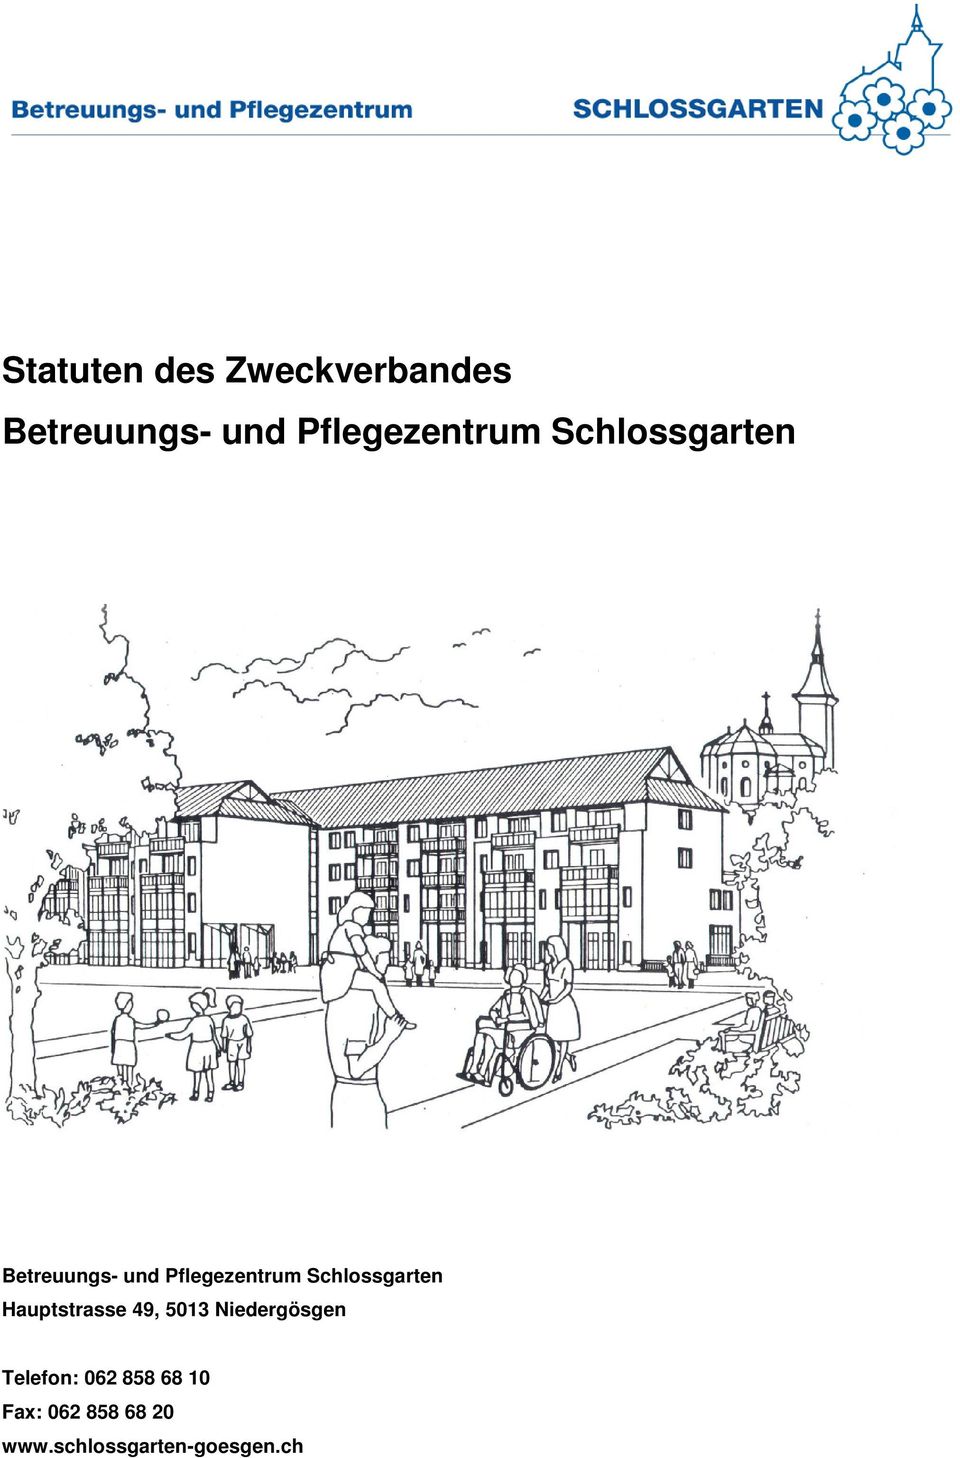 Pflegezentrum Schlossgarten Hauptstrasse 49, 5013